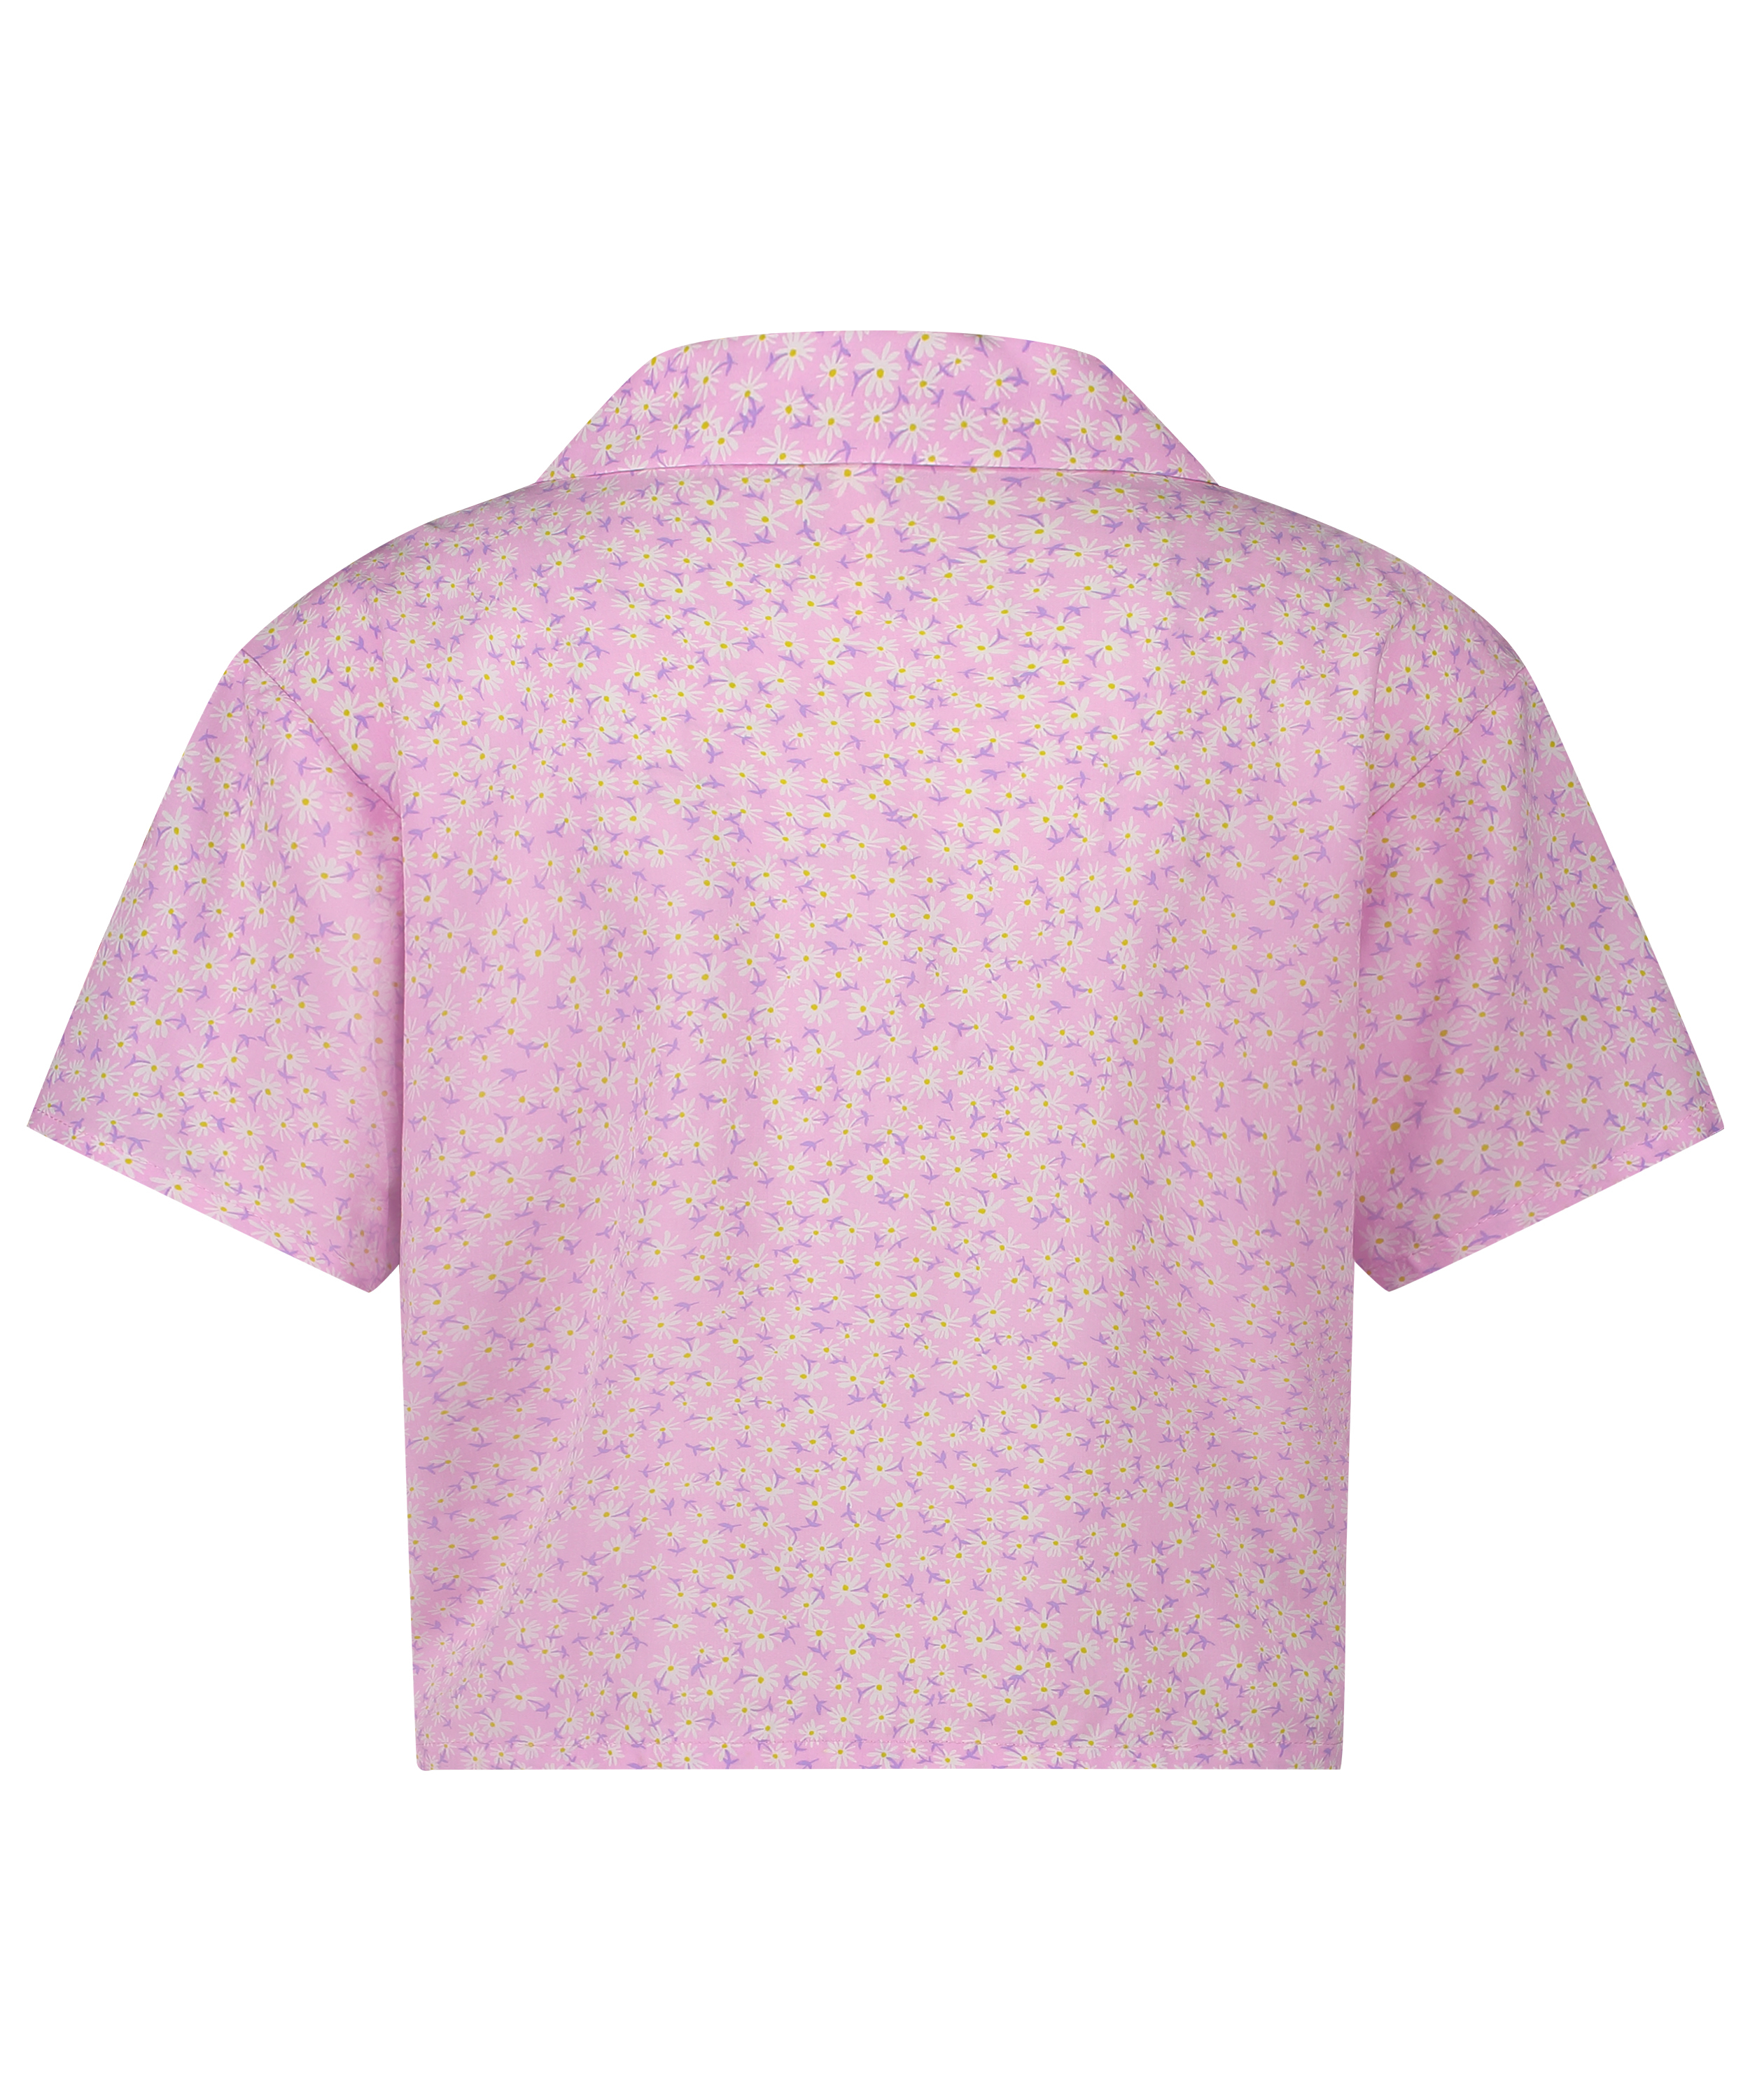 Springbreakers Pyjama Top, Pink, main